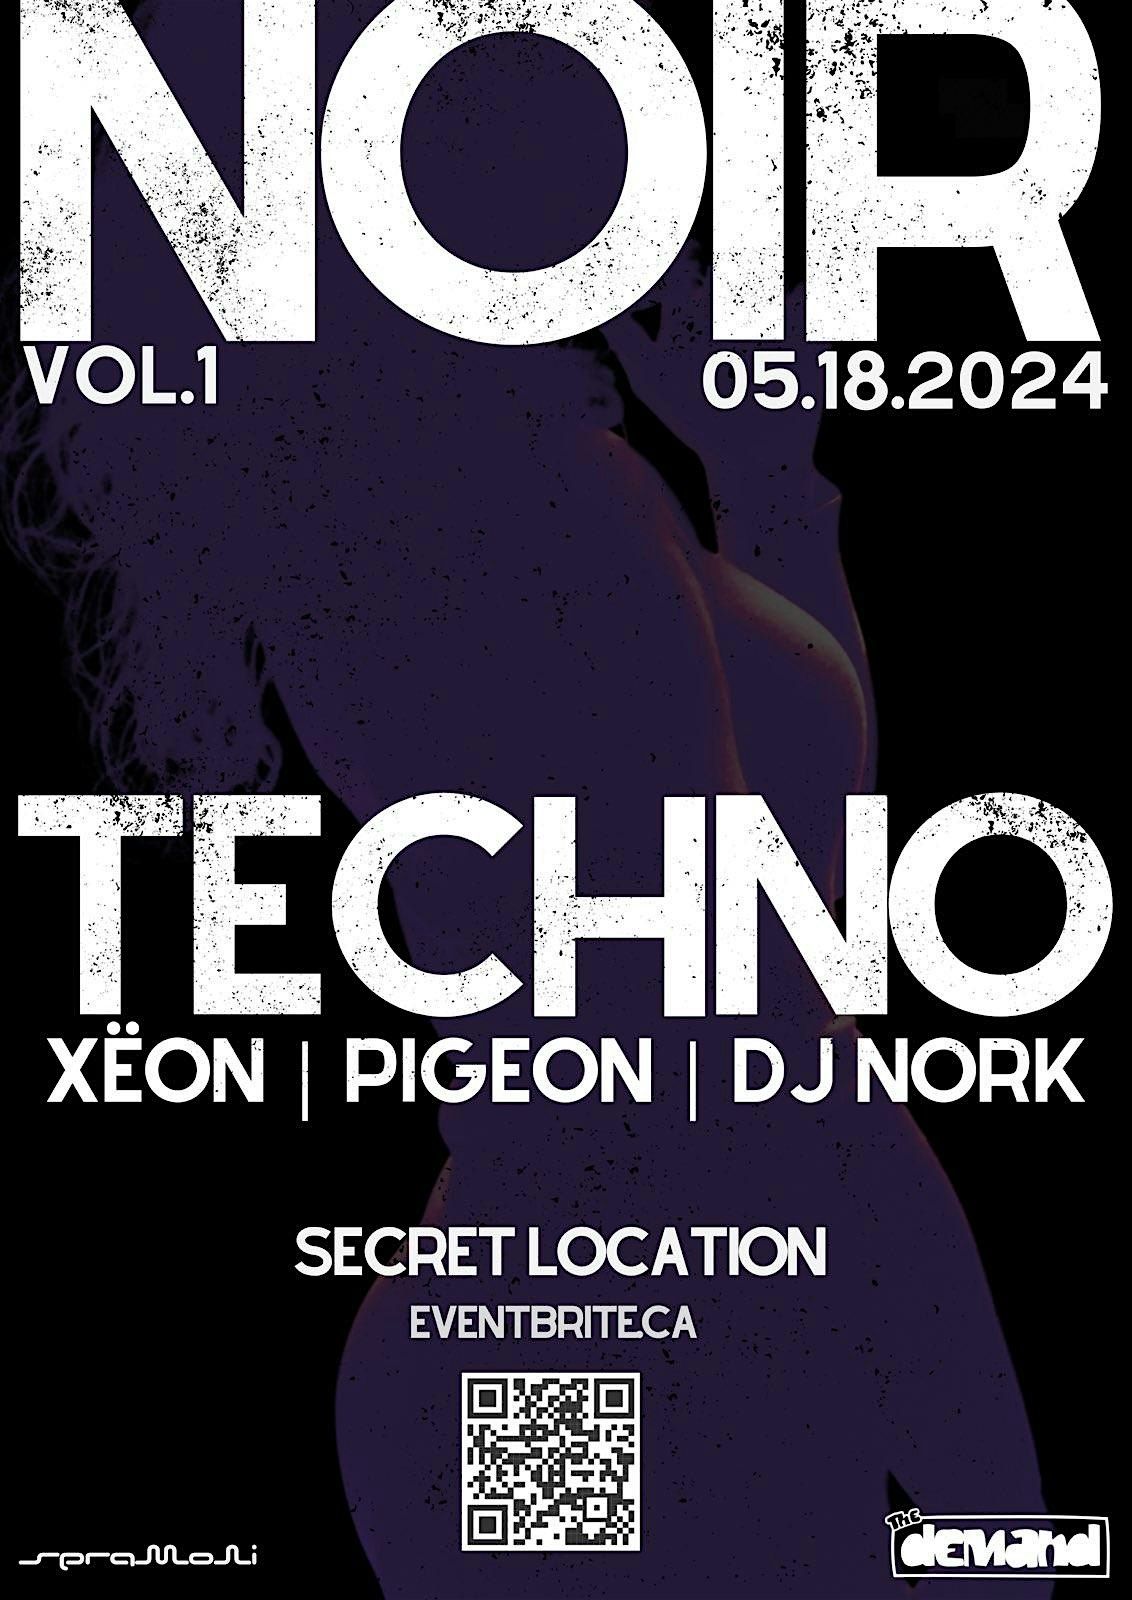 Noir: A Techno Dance Party